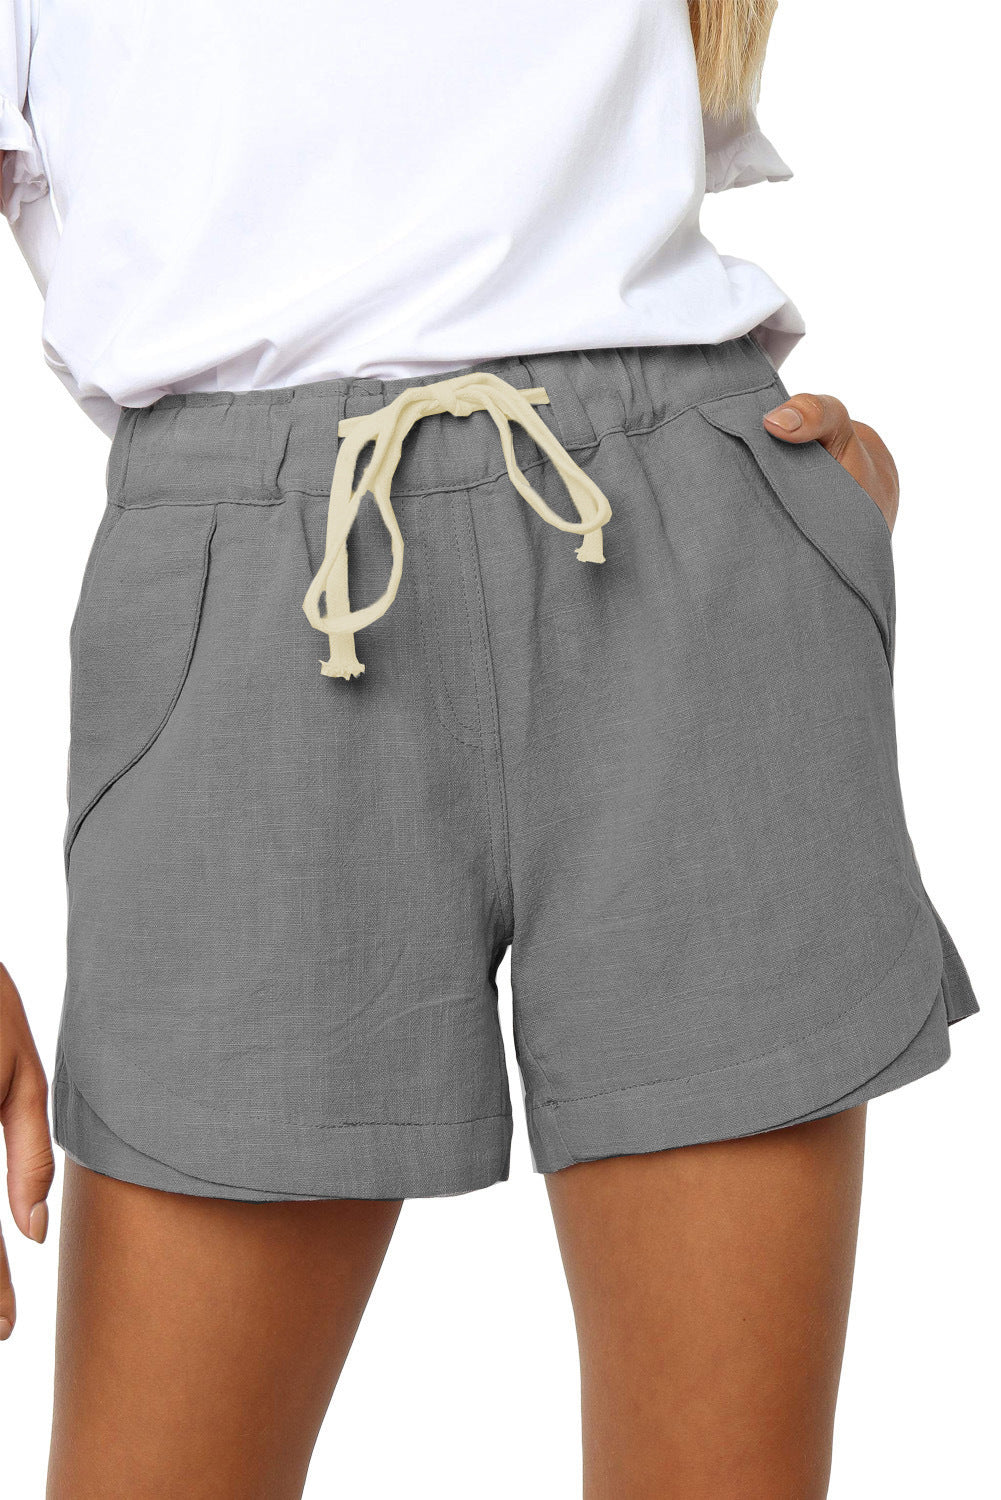 Sommer-Shorts mit plissierter Tasche und A-Linie, Stretch, Schnürung und hoher Taille